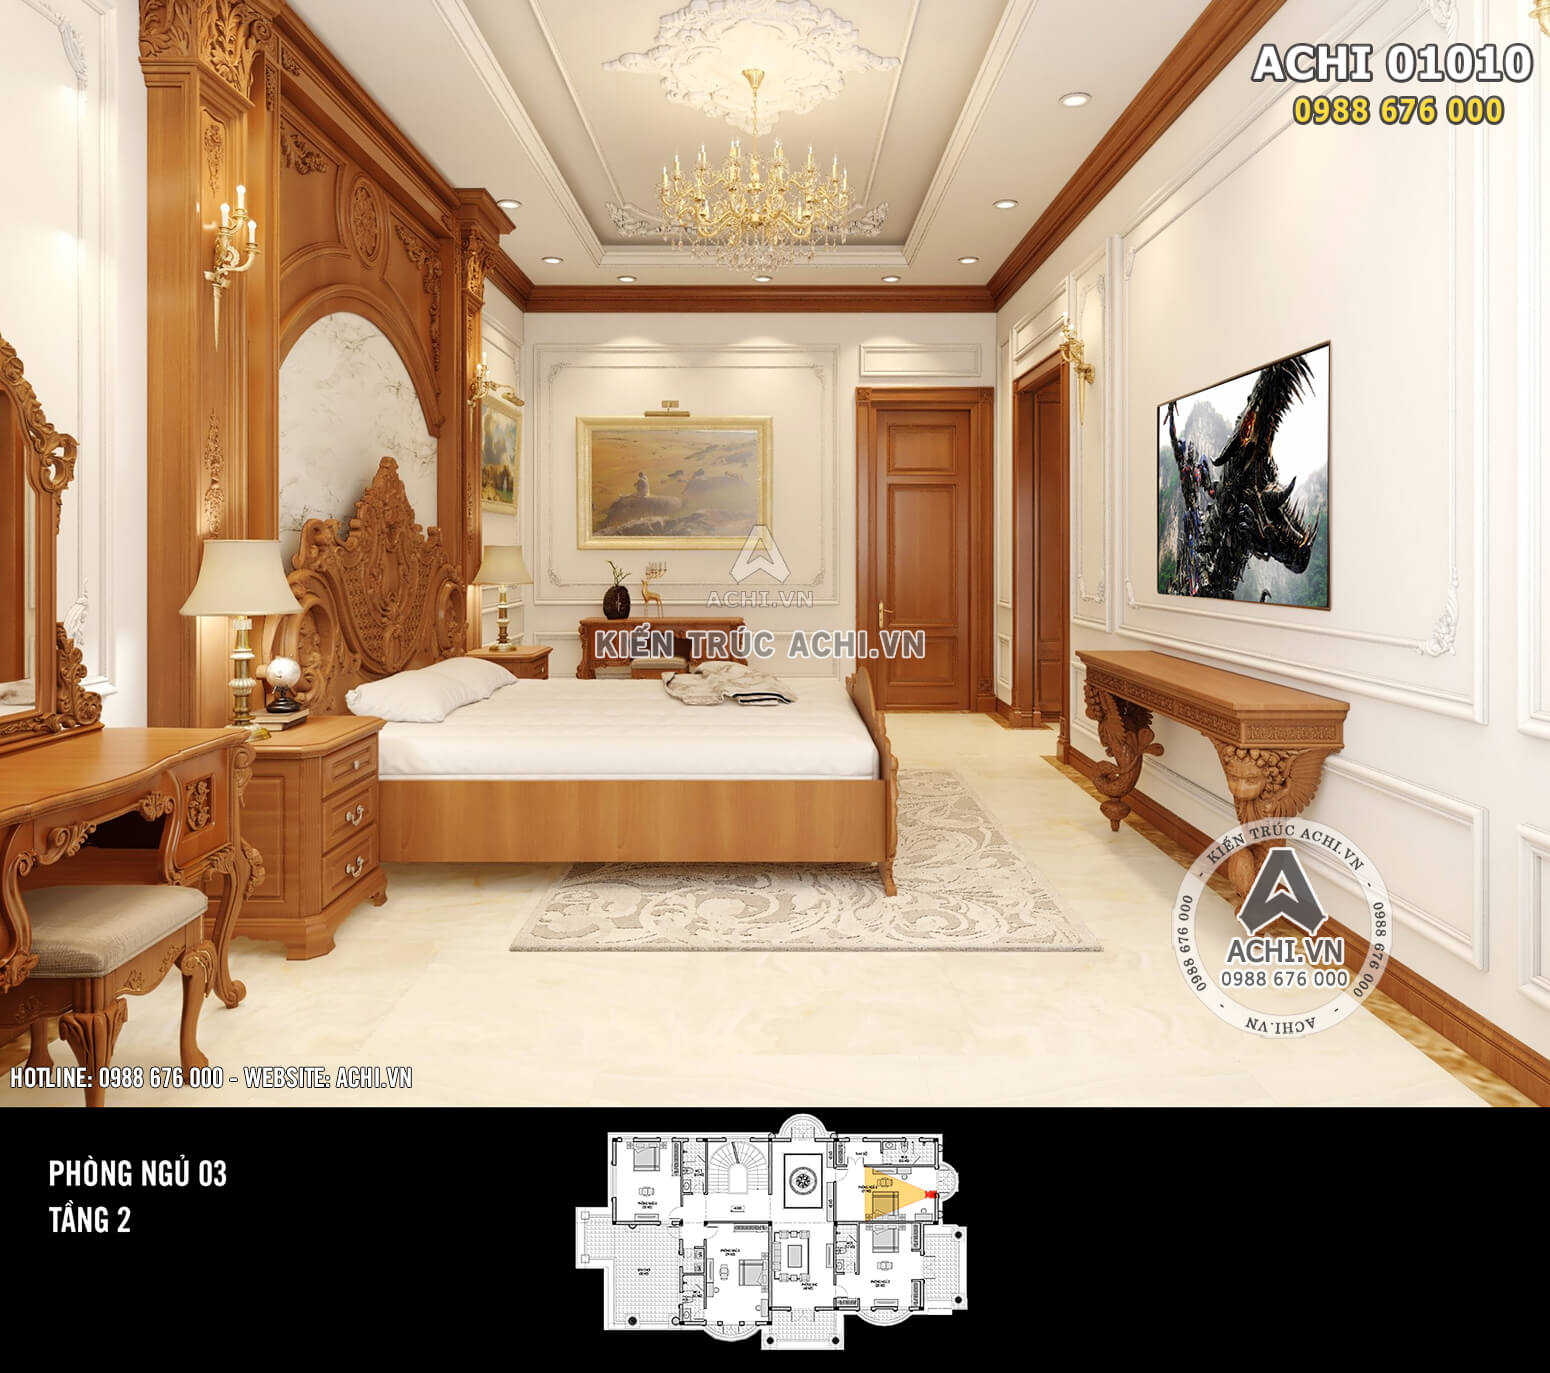 Hình ảnh: Thiết kế nội thất tân cổ điển - Phòng ngủ 2 - 02